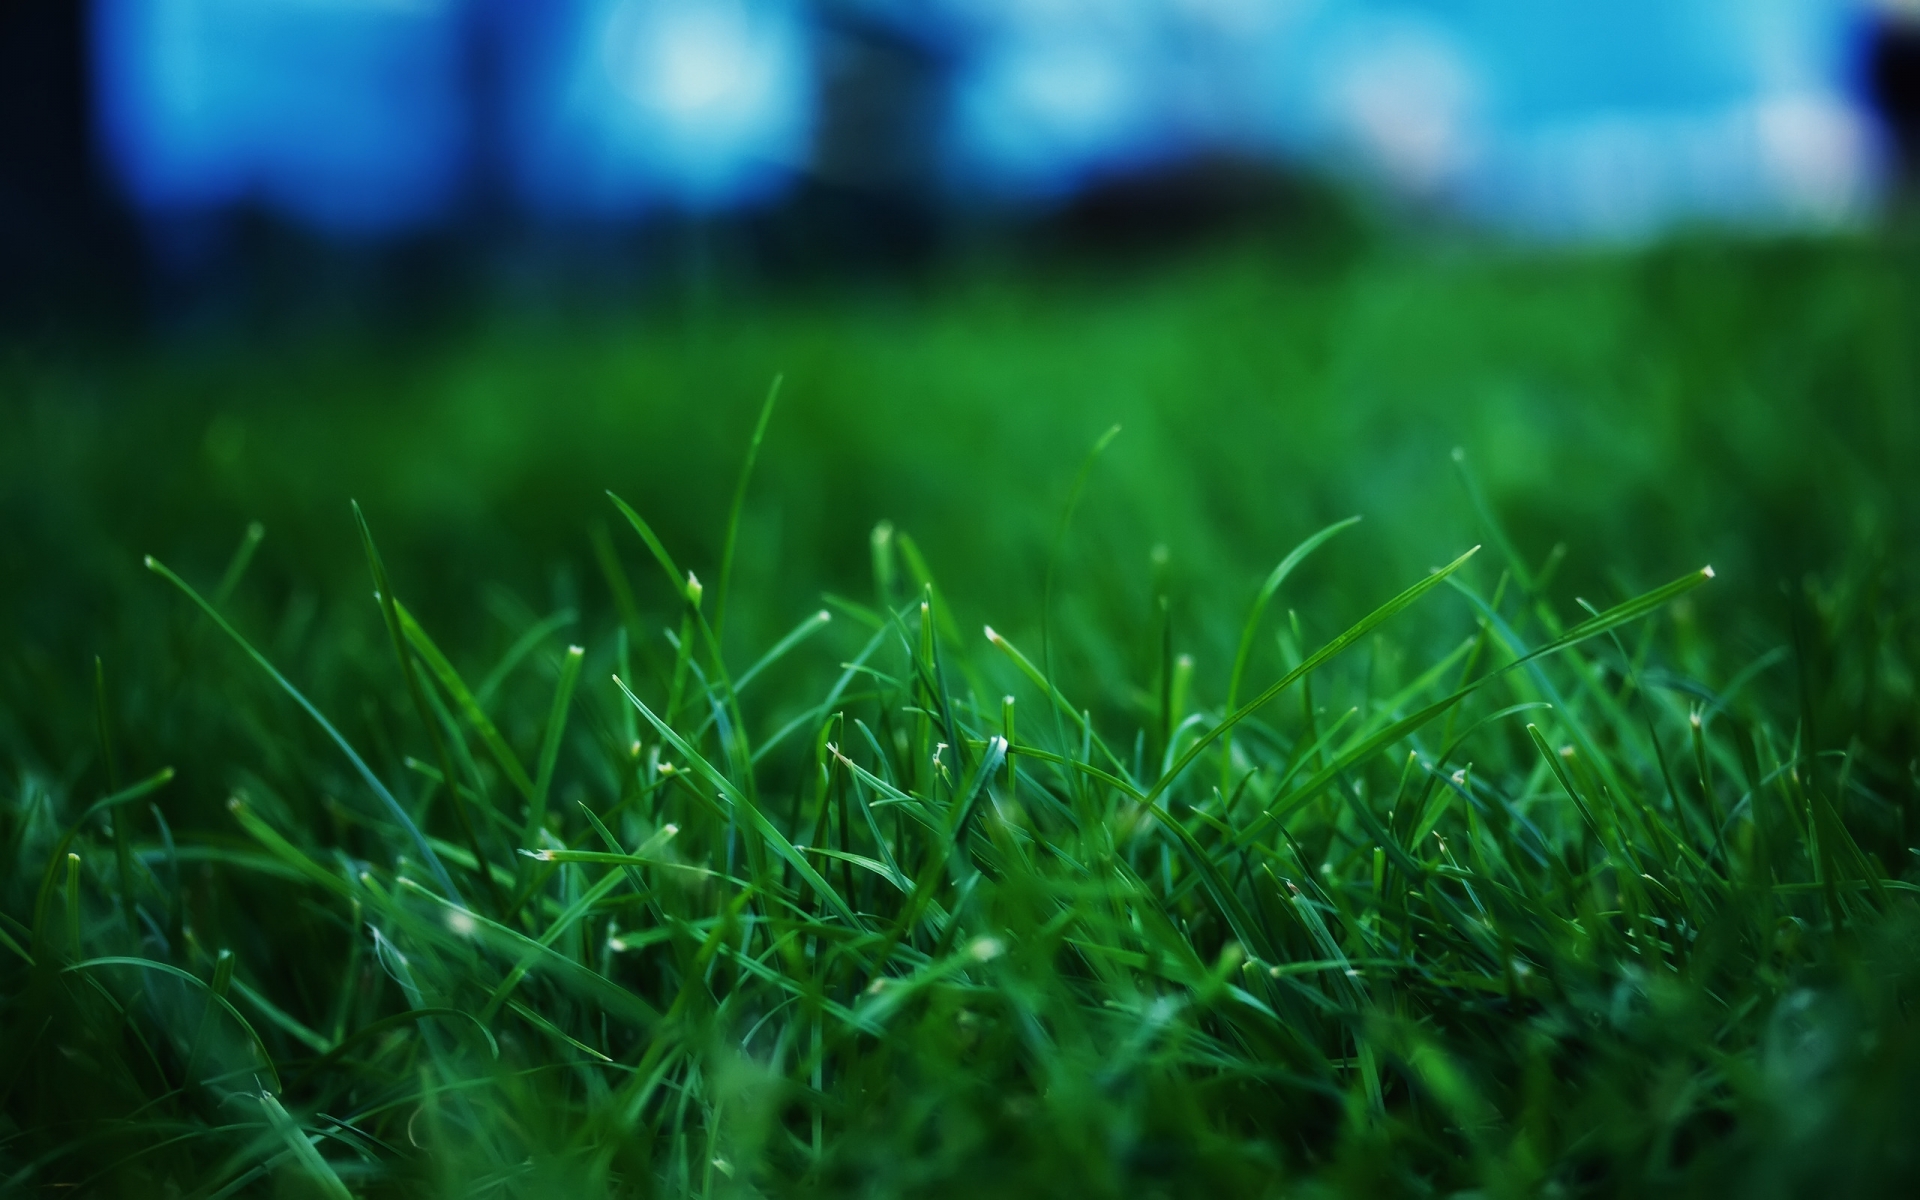 Fresh Grass for 1920 x 1200 widescreen resolution